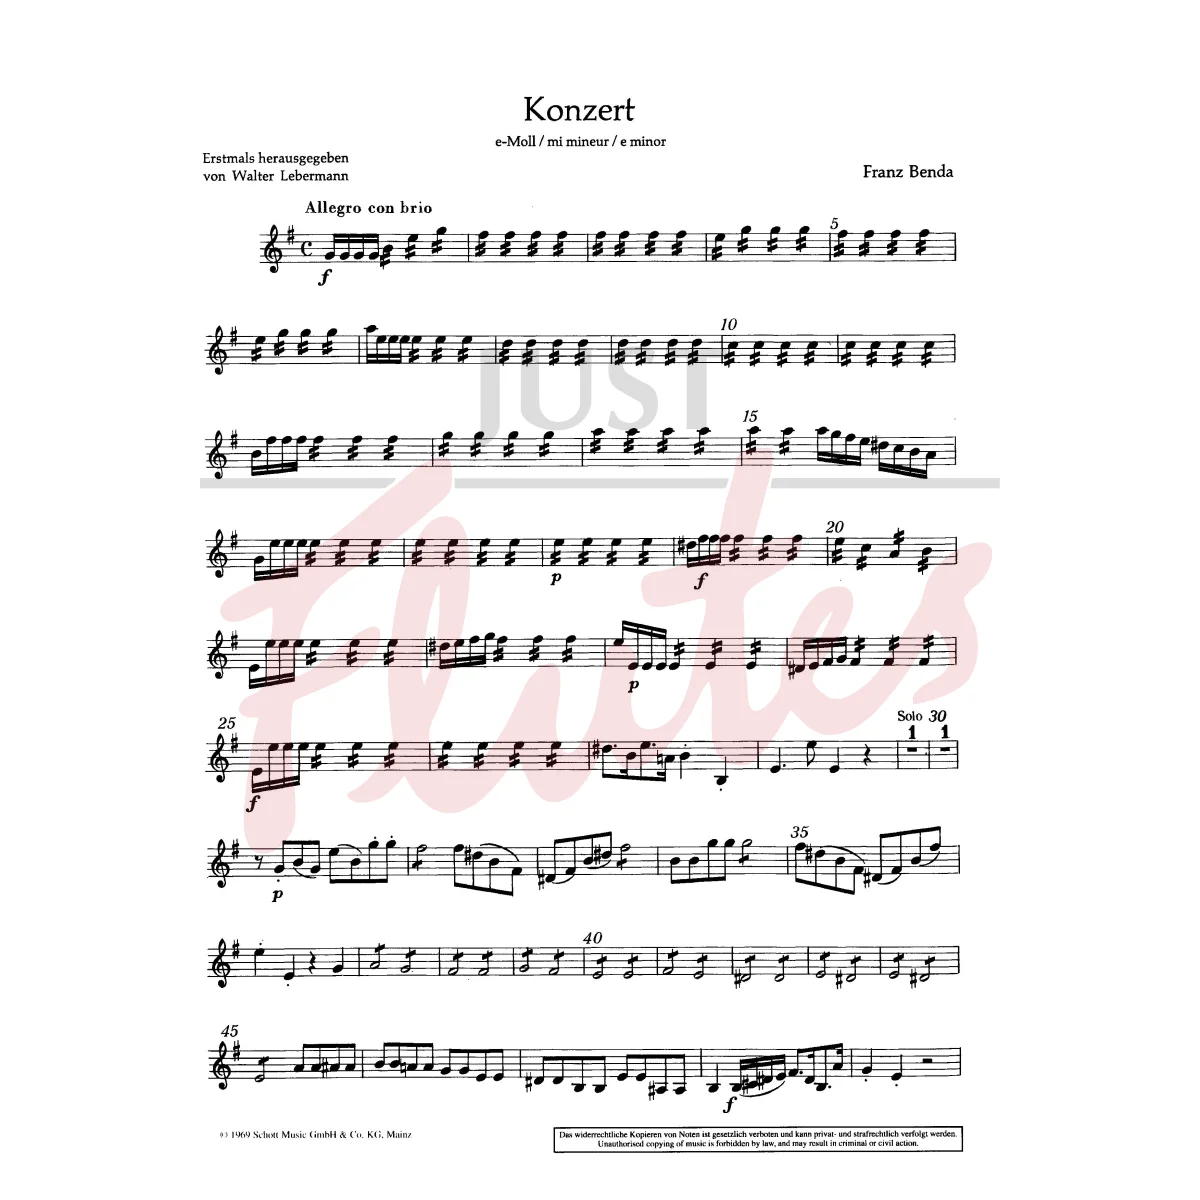 Concerto in E minor for Flute, String Orchestra and Basso Continuo